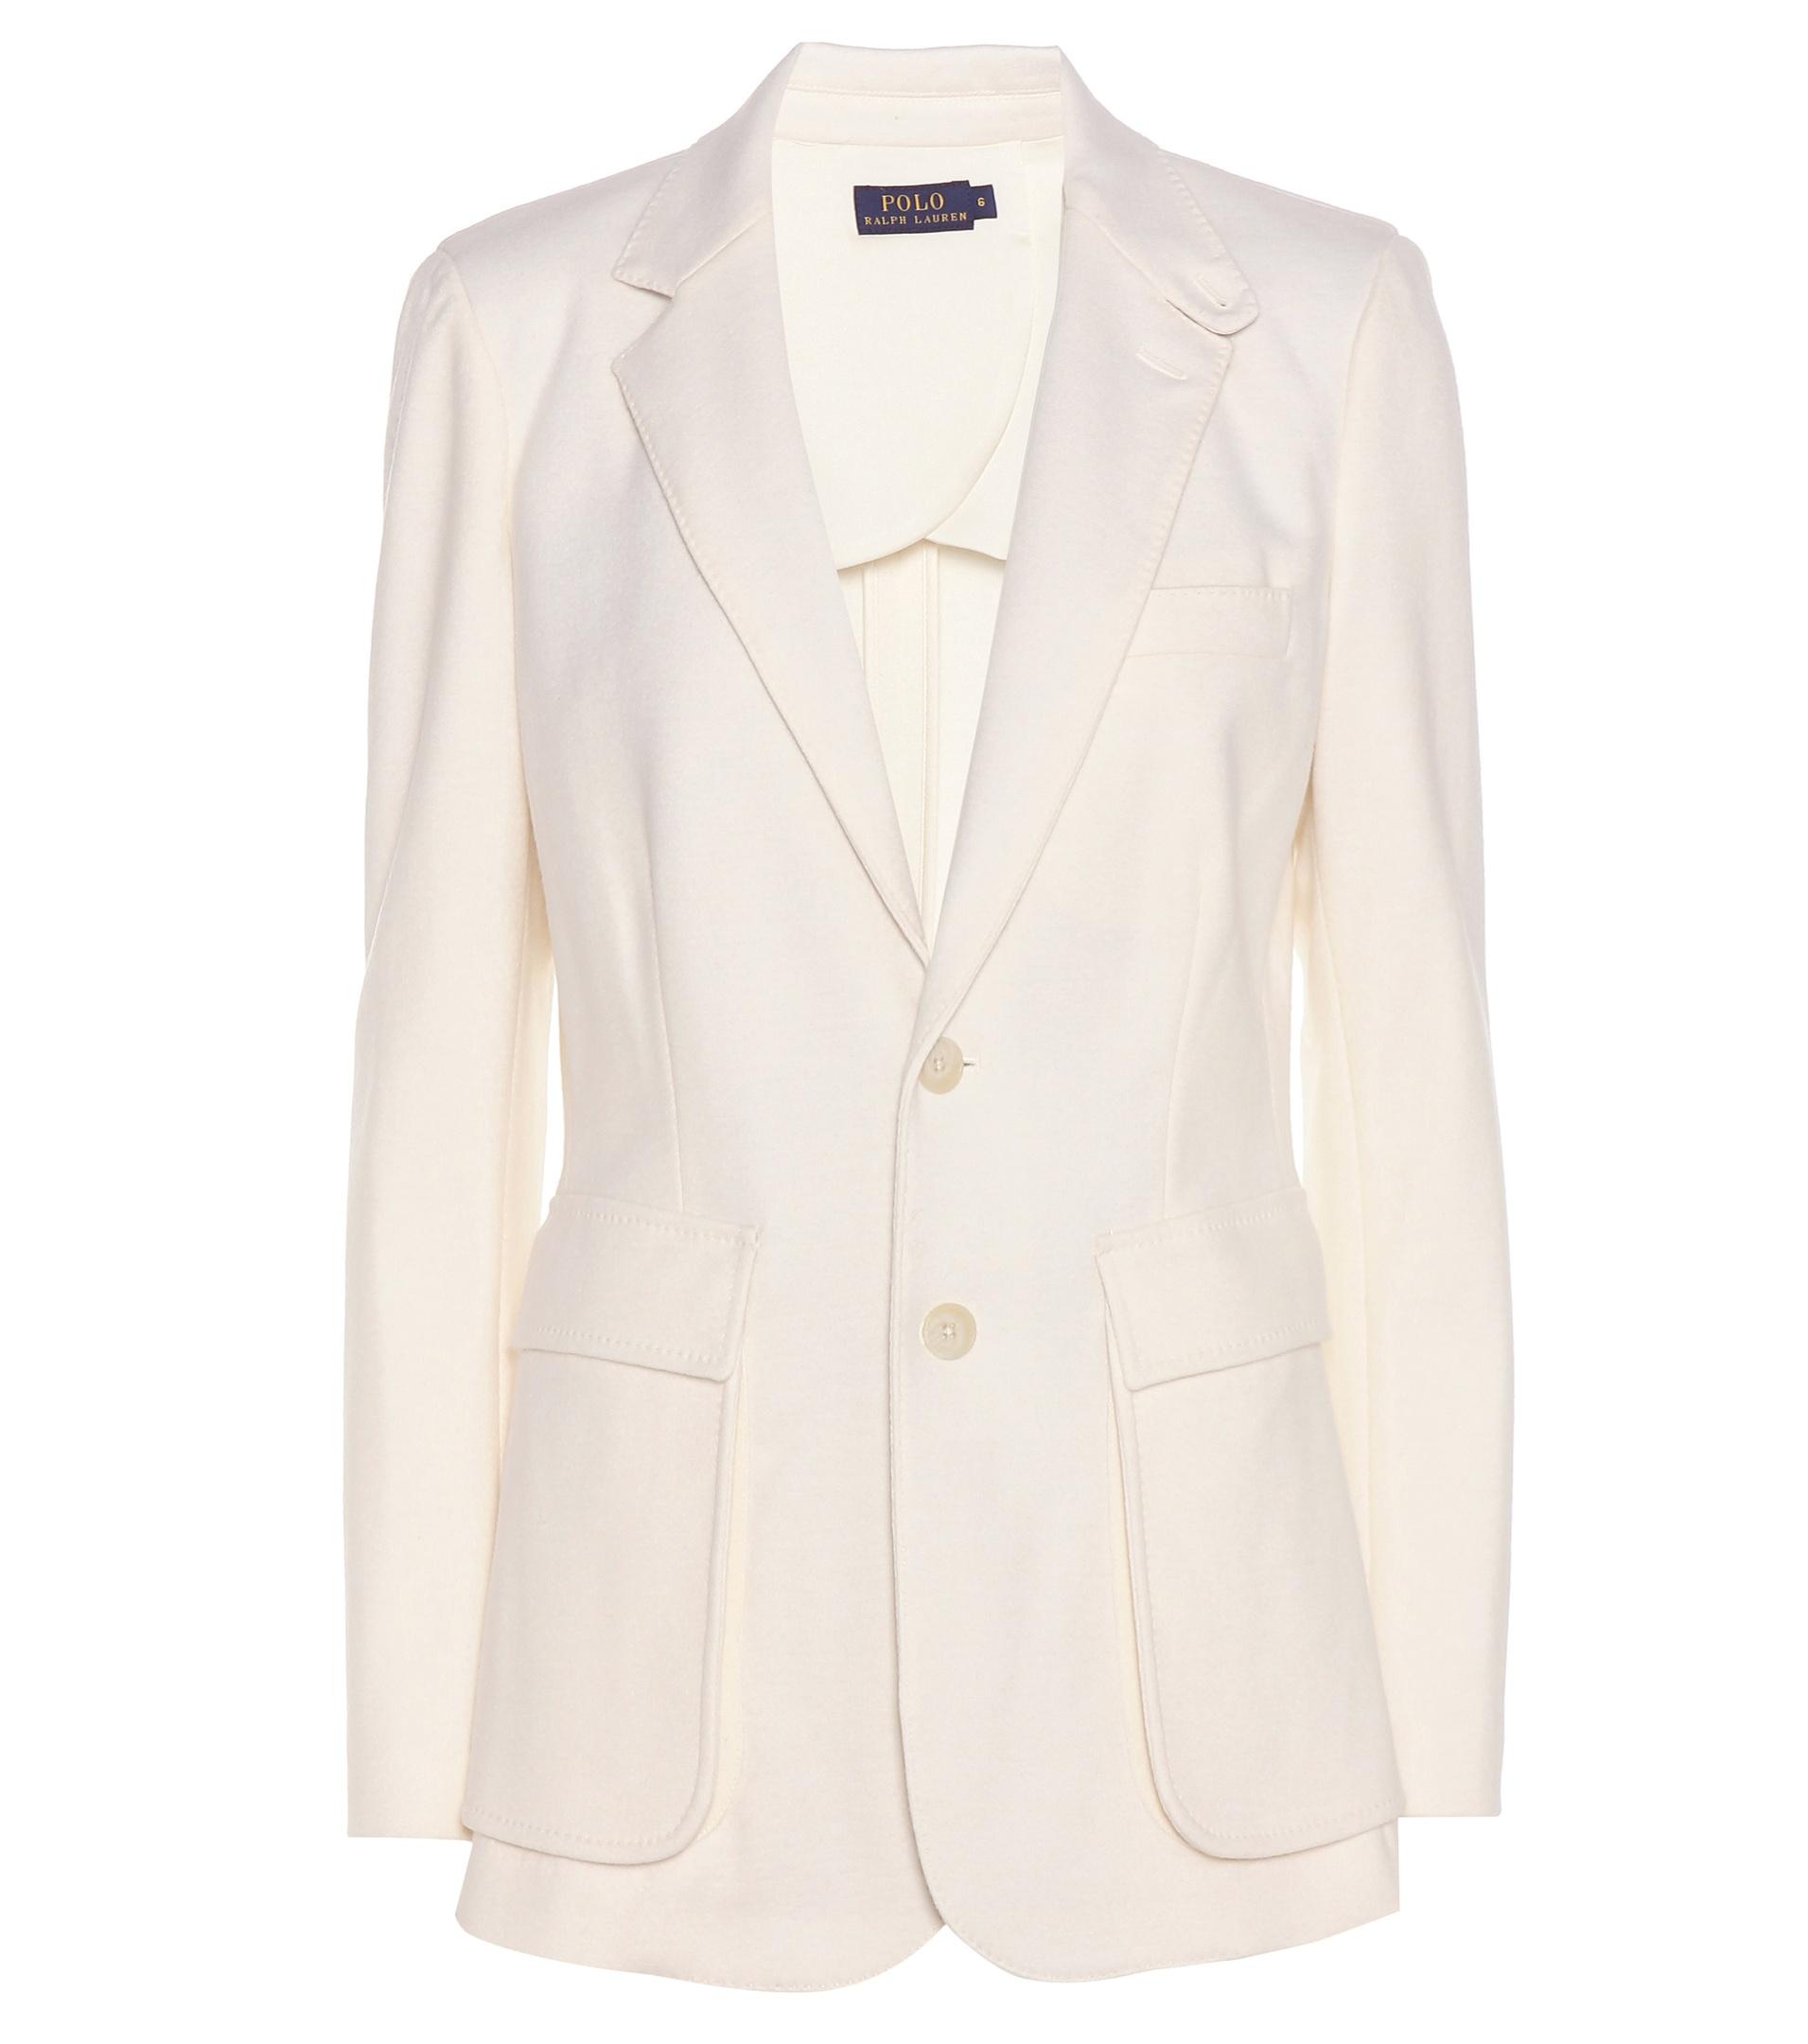 Polo ralph lauren Wool-blend Jacket in White | Lyst